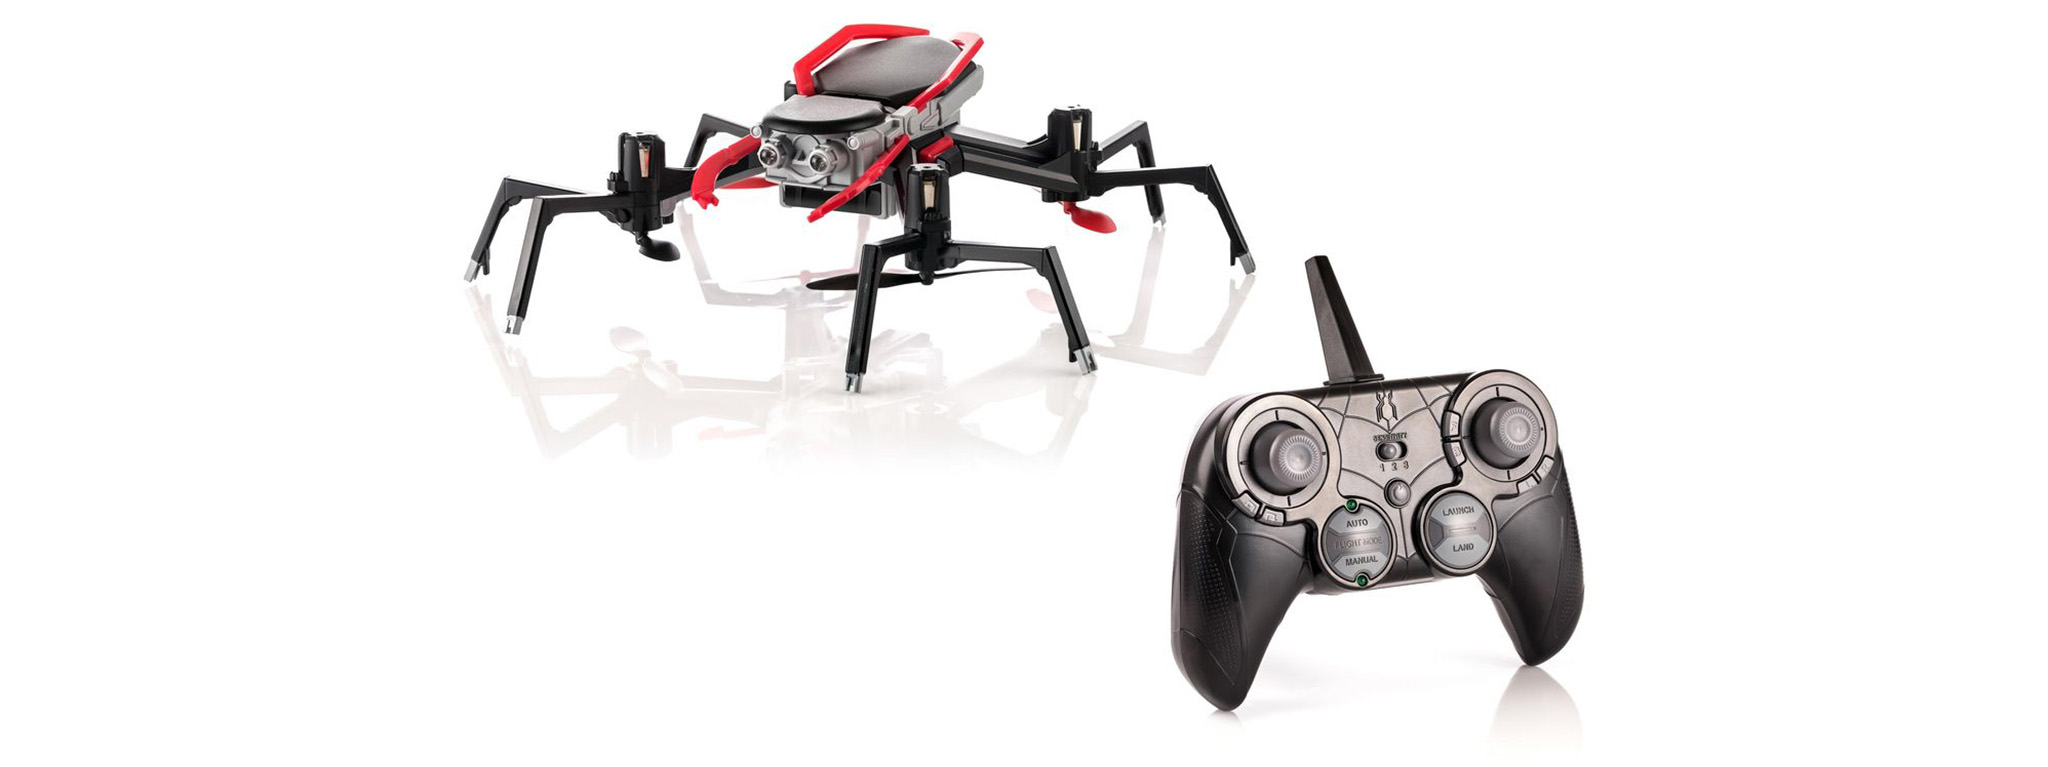 Spider-Drone - "bé nhện" xuất hiện trong Spider-Man Homecoming được bán với giá 90USD kể từ tháng 6